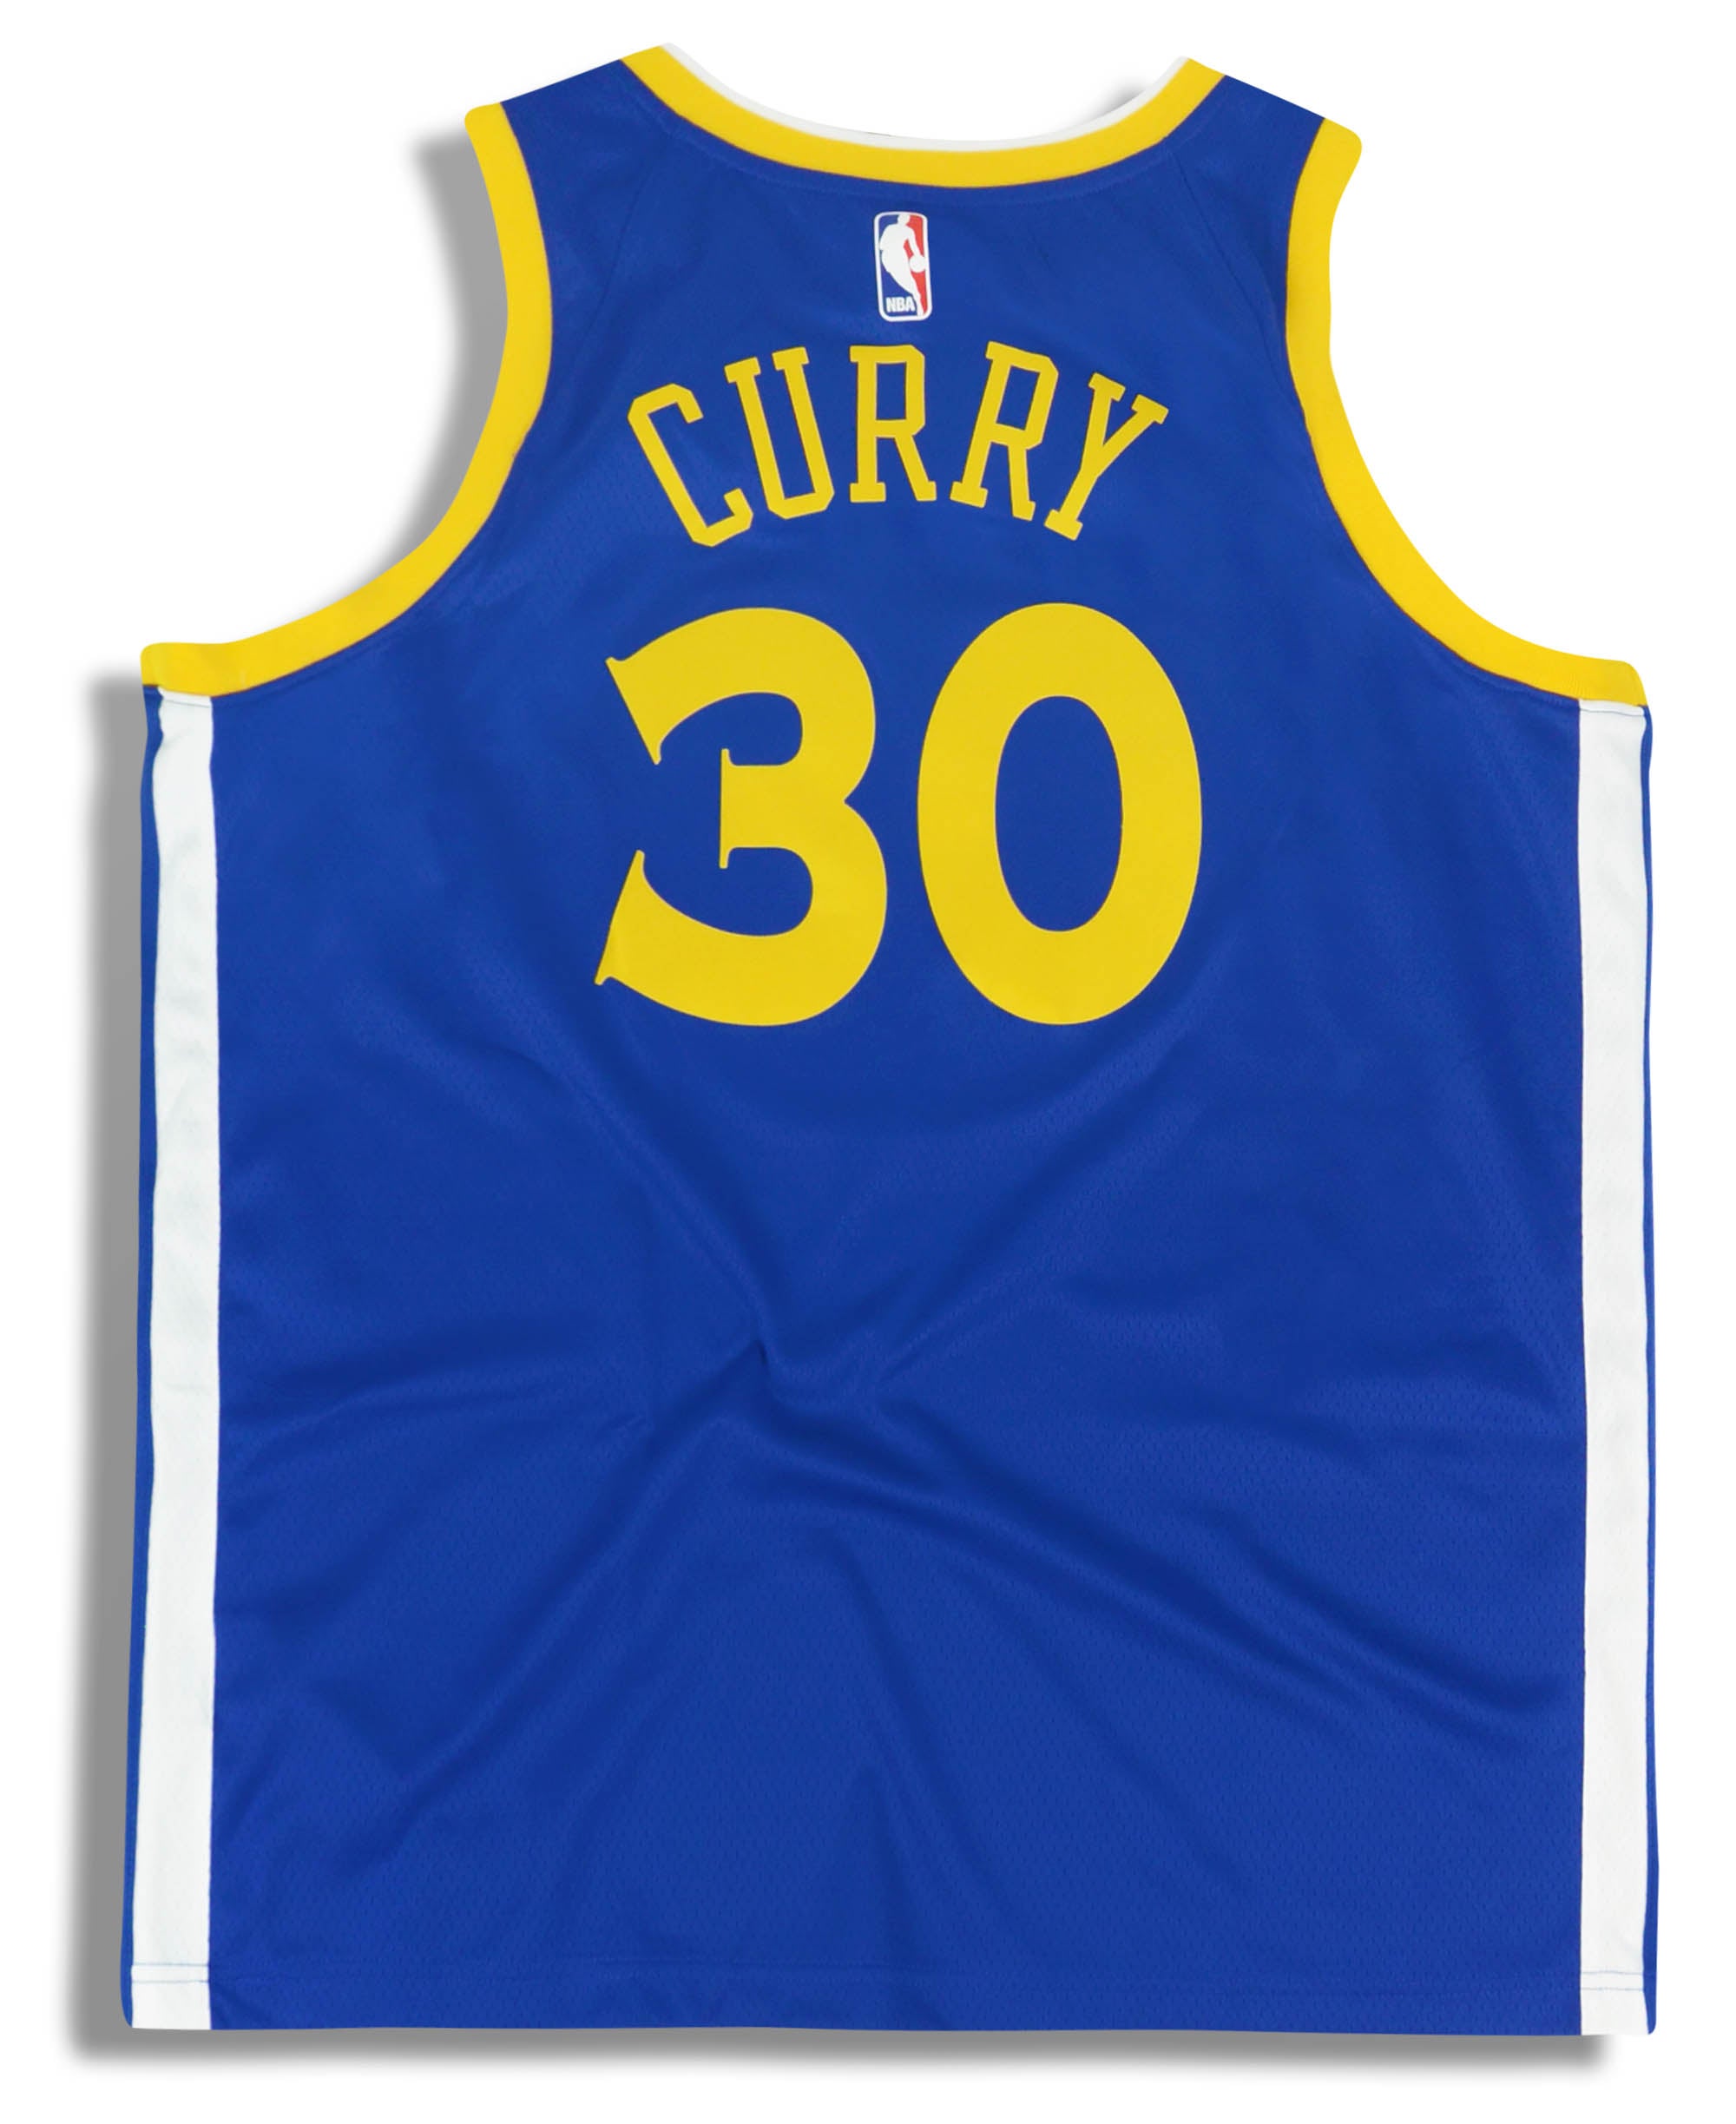 Adidas HWC 2010 NBA Golden State Warriors Stephen Curry Basketball Jersey